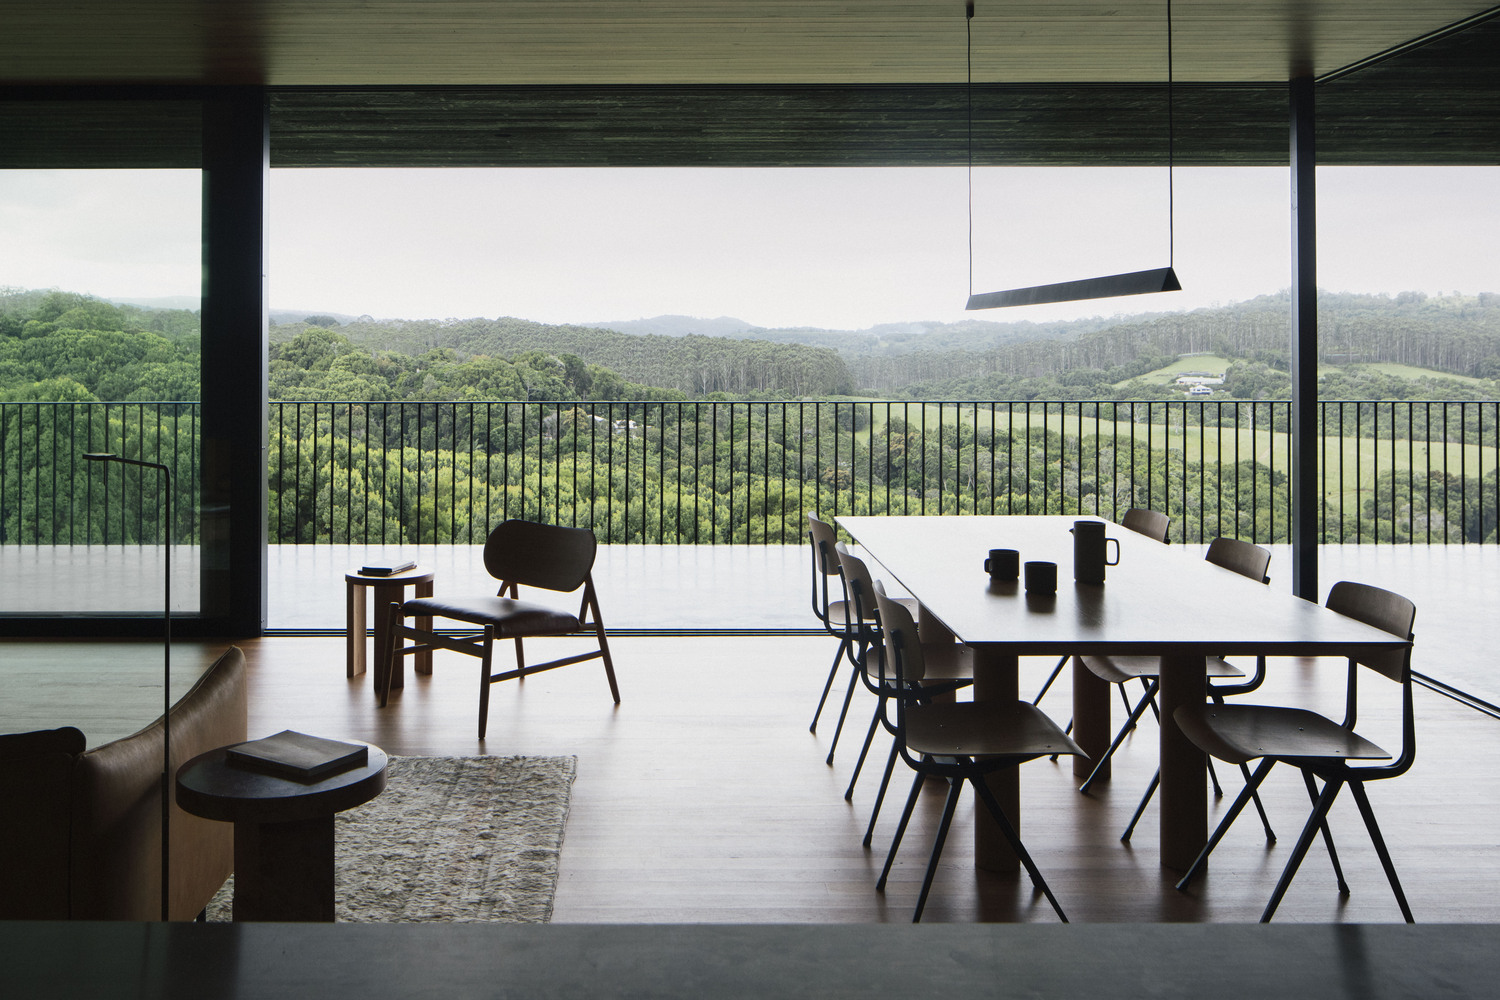 Phòng khách, phòng bếp và khu vực ăn uống được thiết kế mở cho cái nhìn thông thoáng, sàn nhà cùng nội thất gỗ được lựa chọn tạo cảm giác ấm cúng.